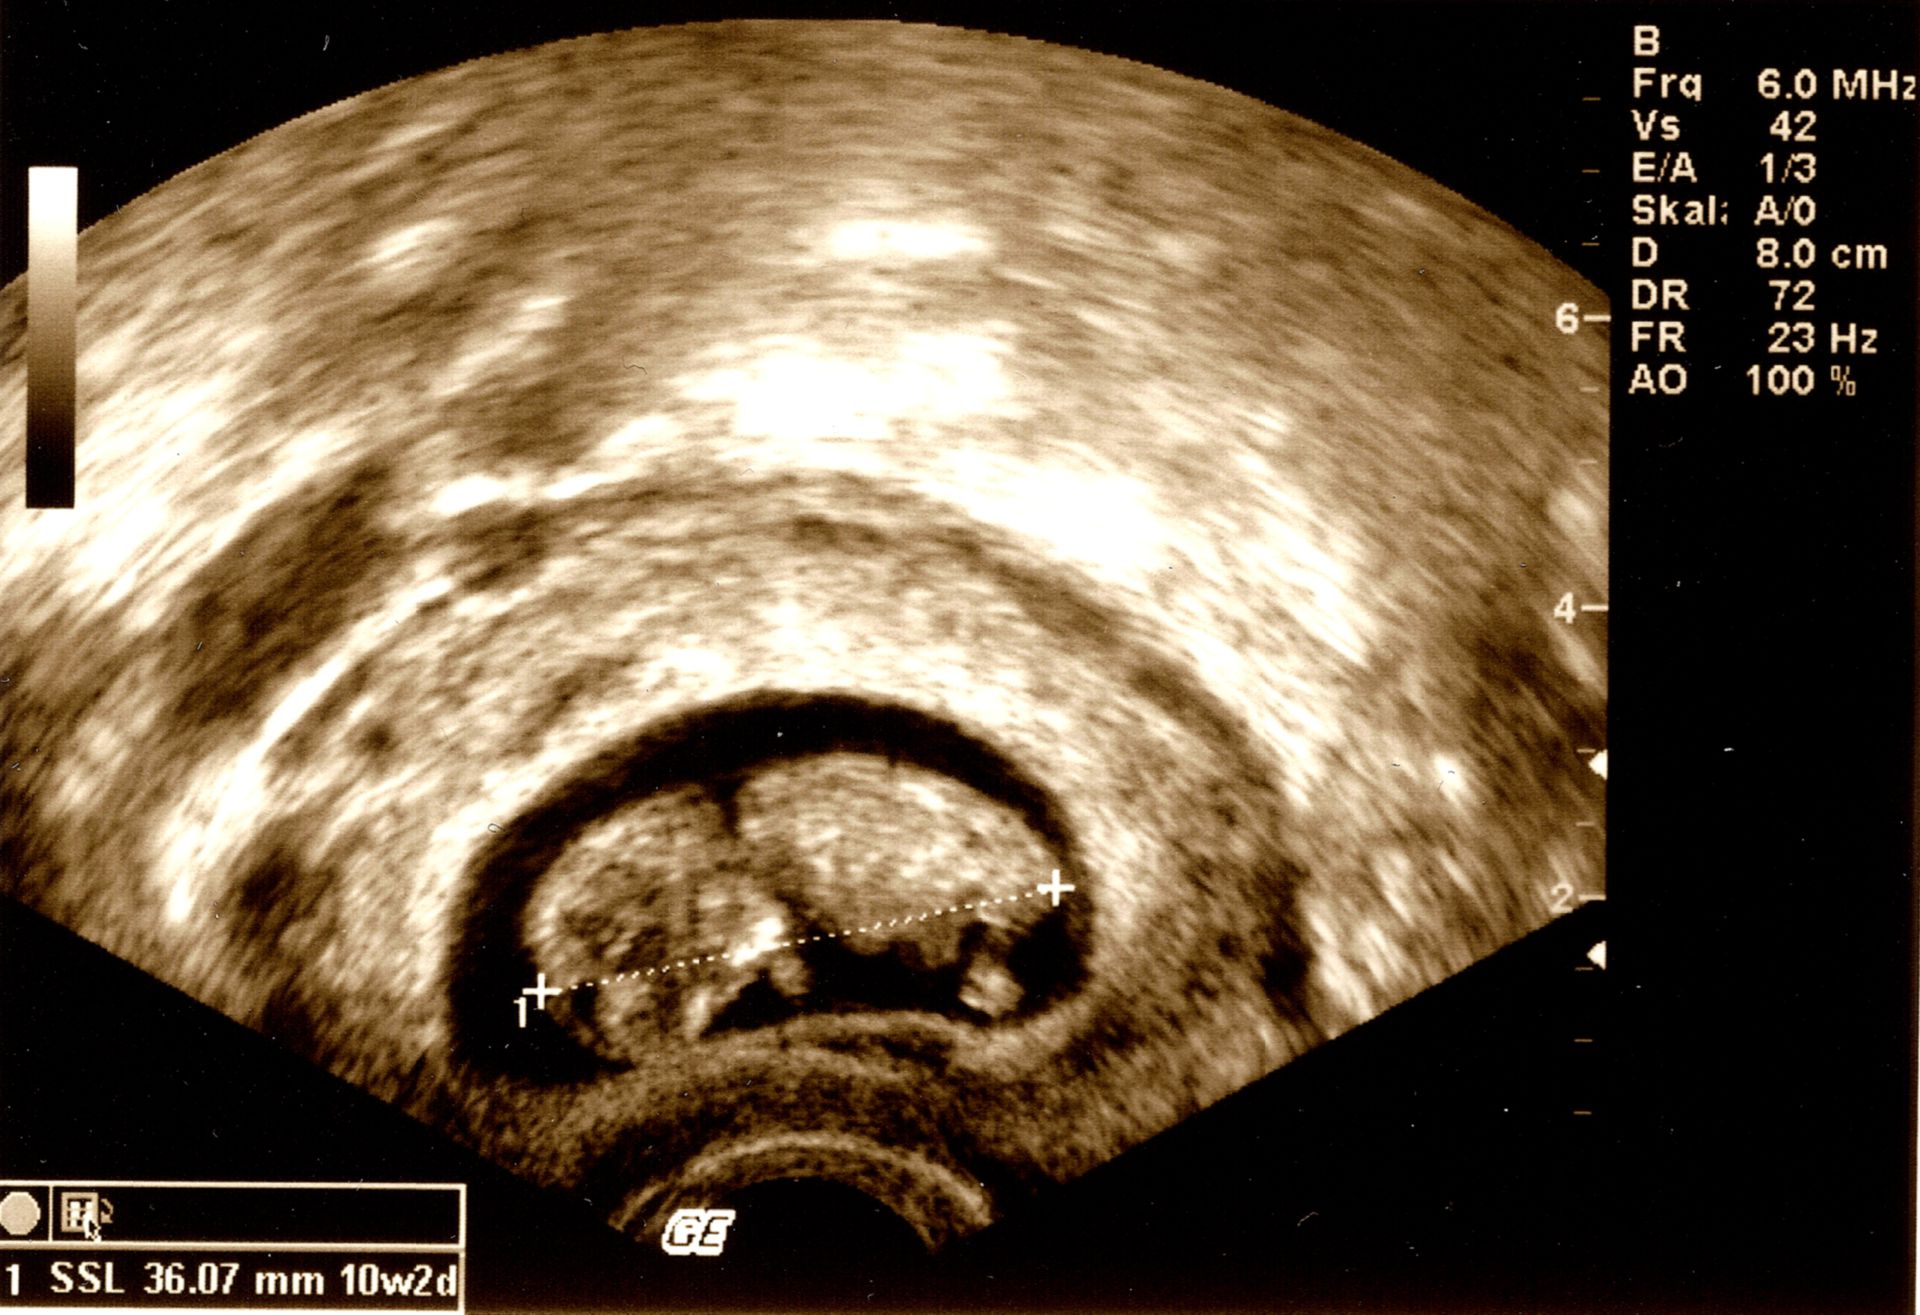 10 week old fetus - ultrasound image